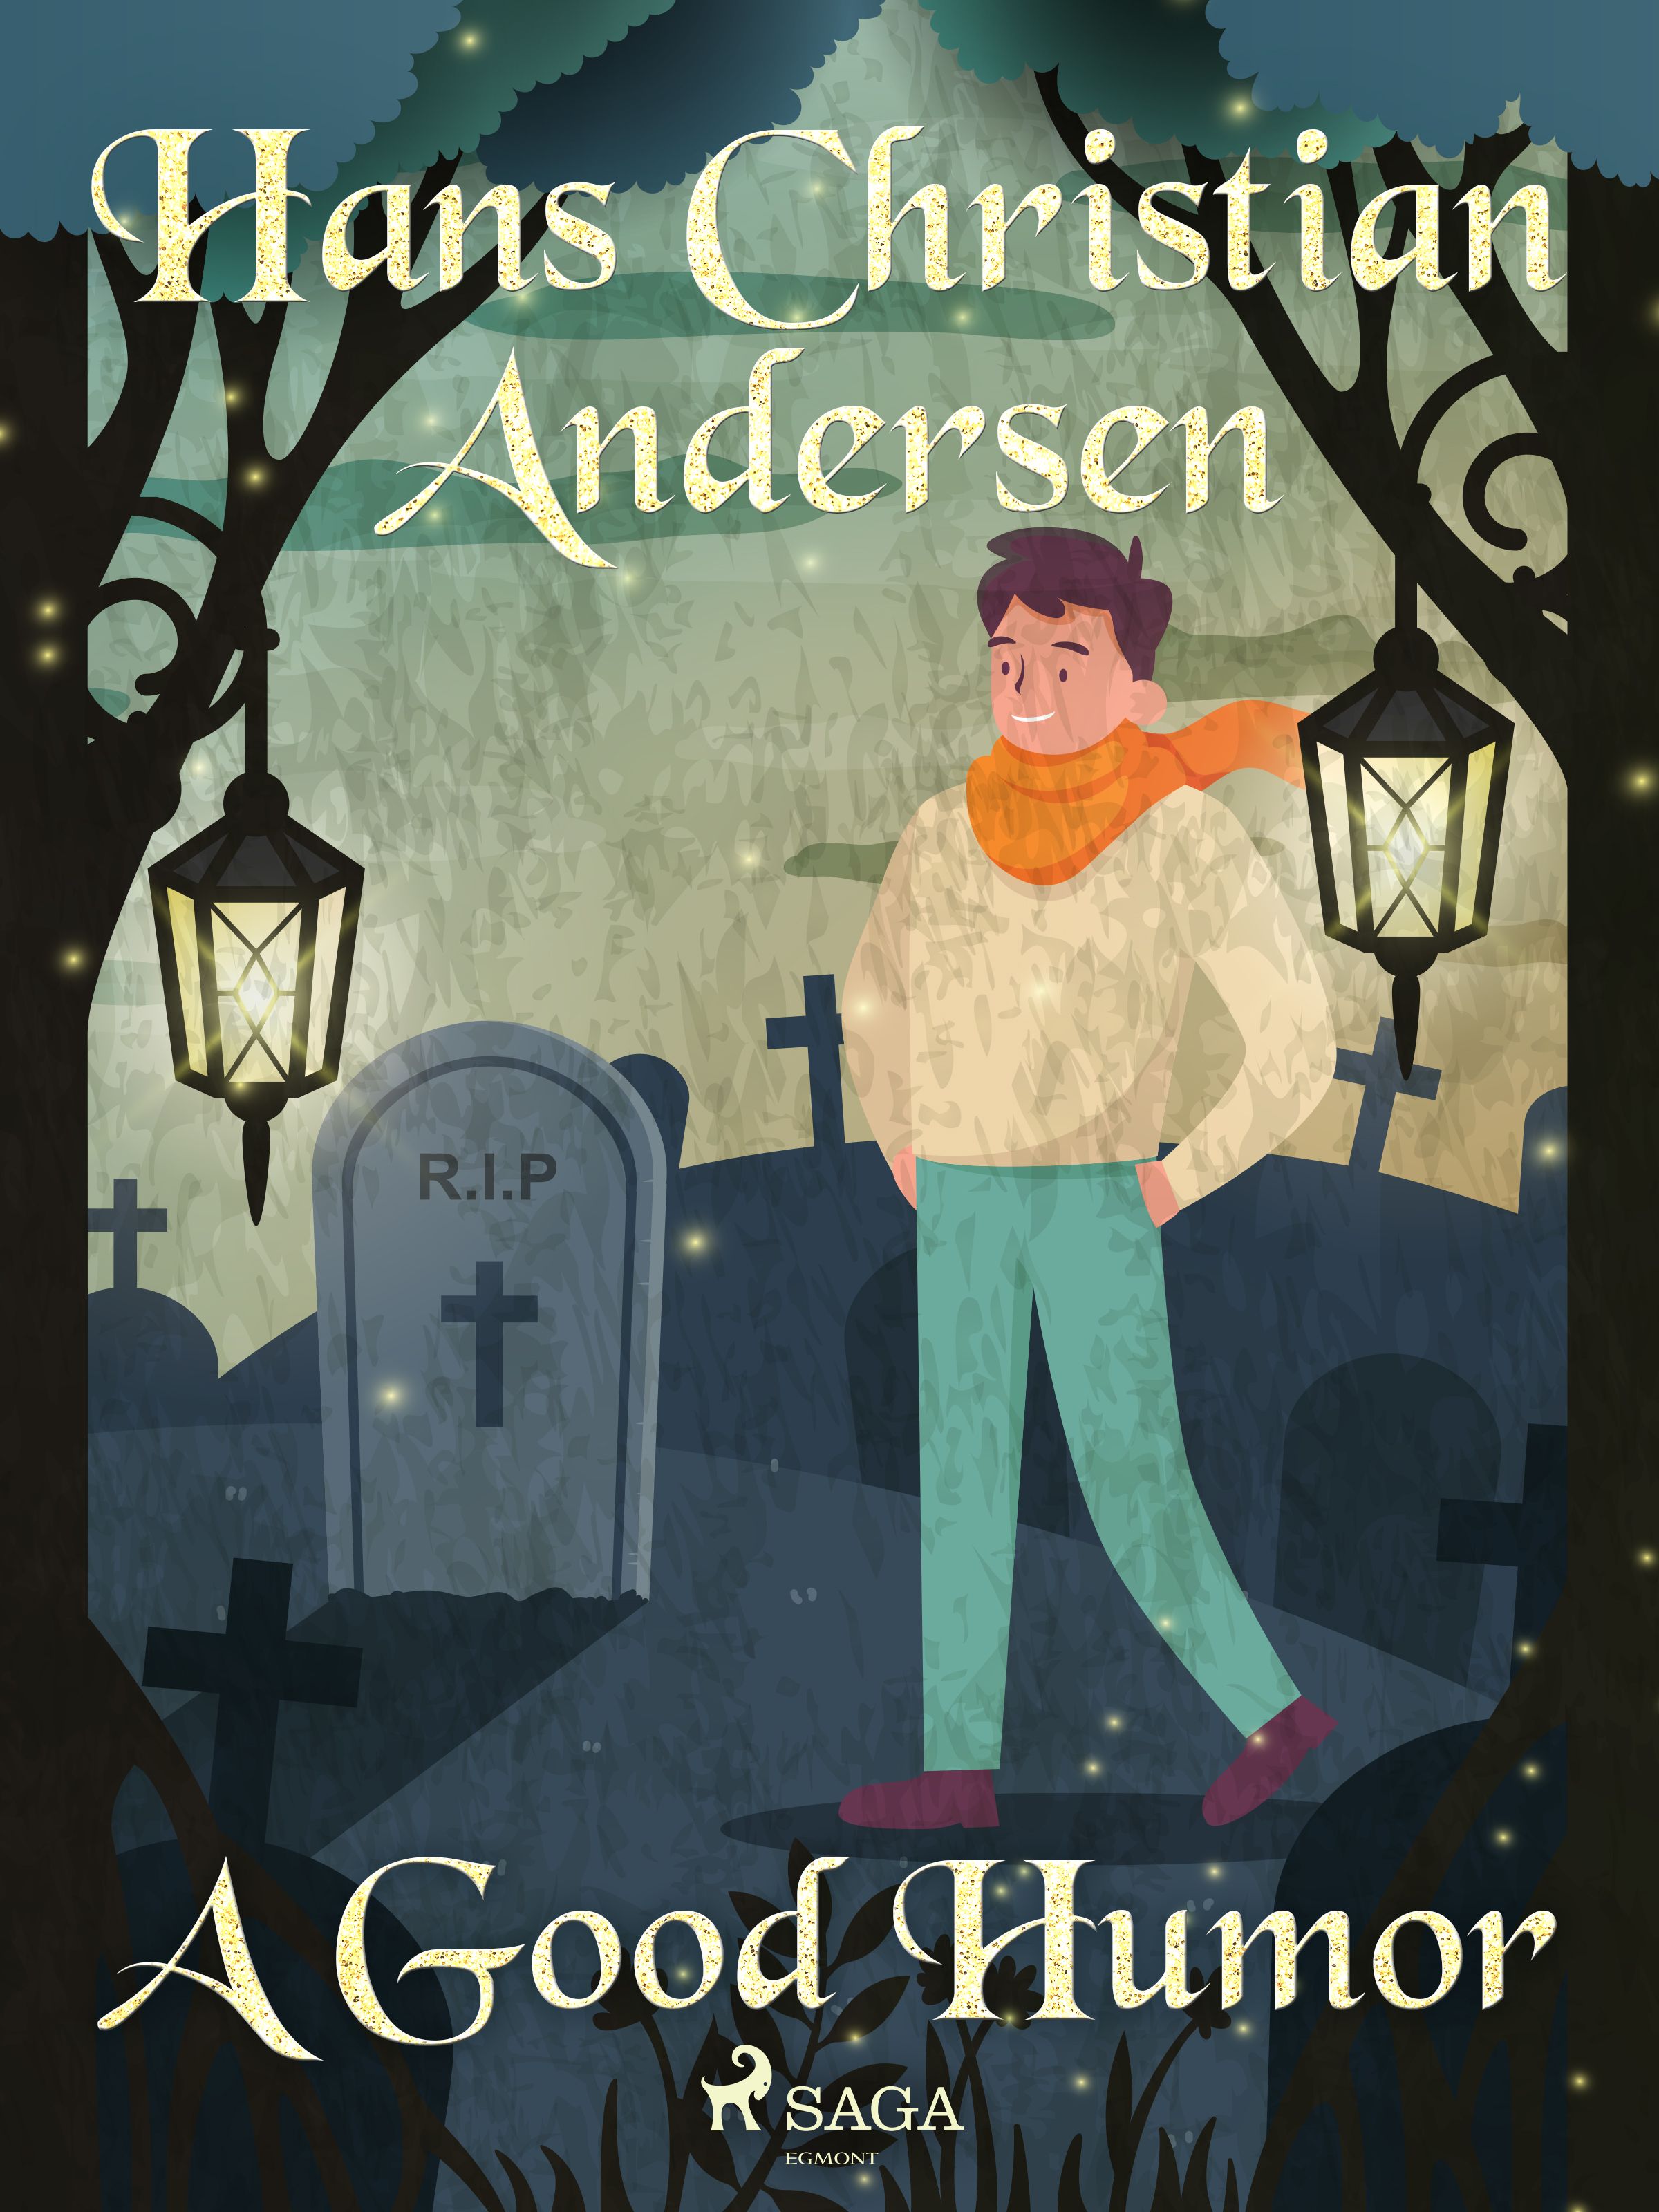 A Good Humor, e-bog af Hans Christian Andersen